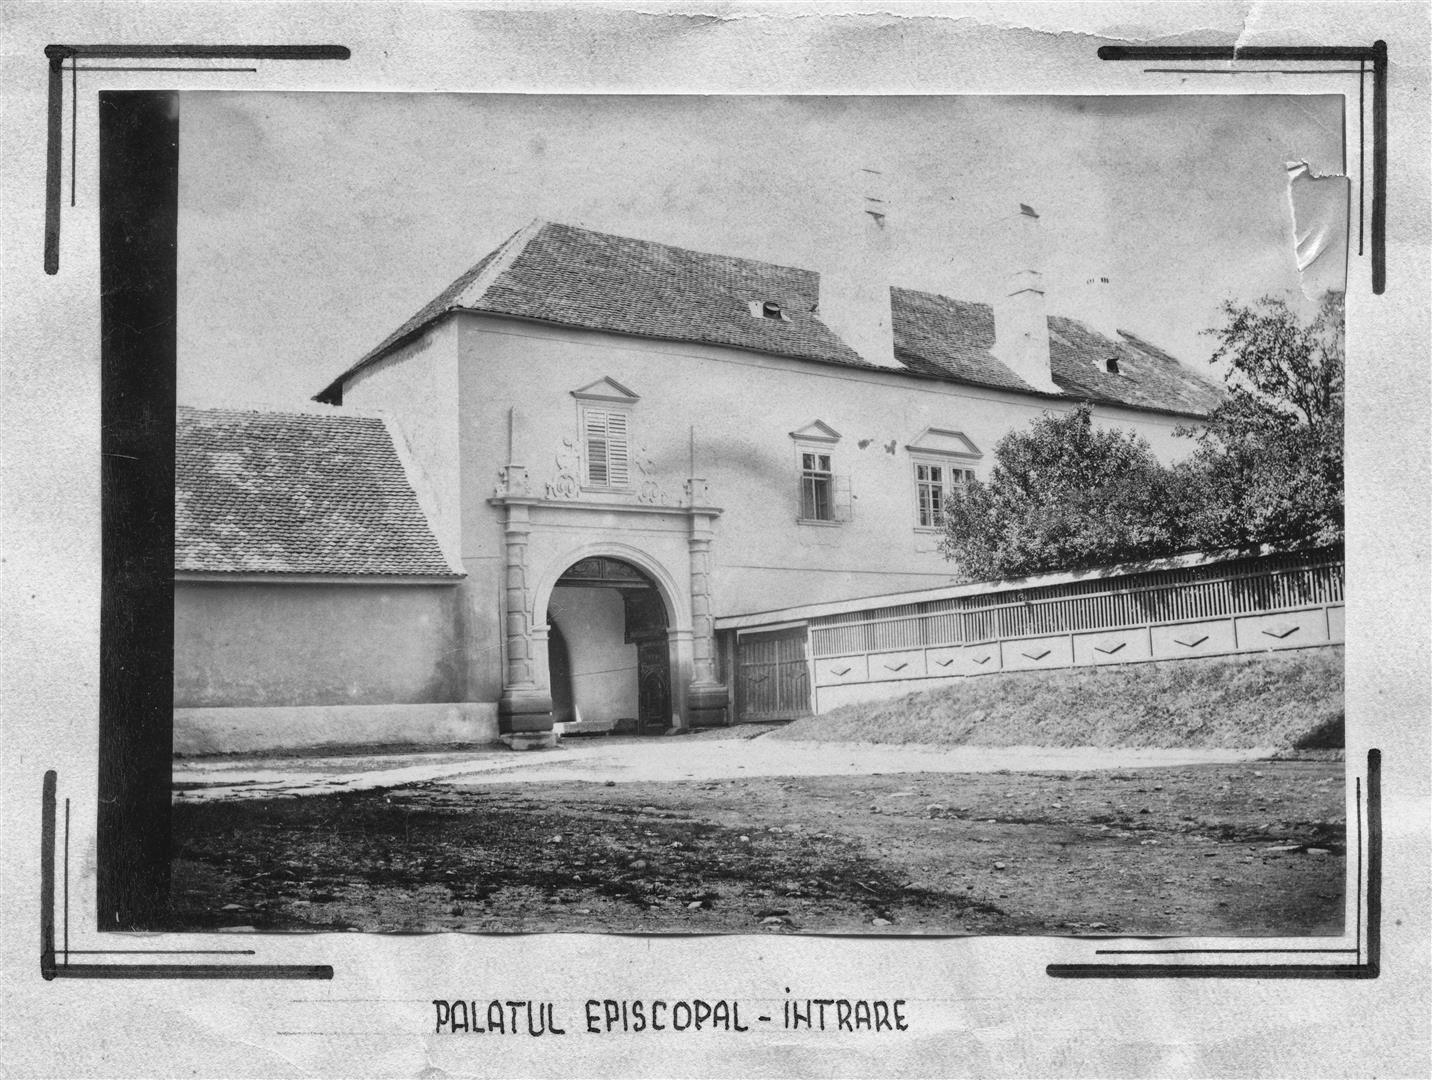 Faţada nordică a palatului episcopal, cu intrarea principală.